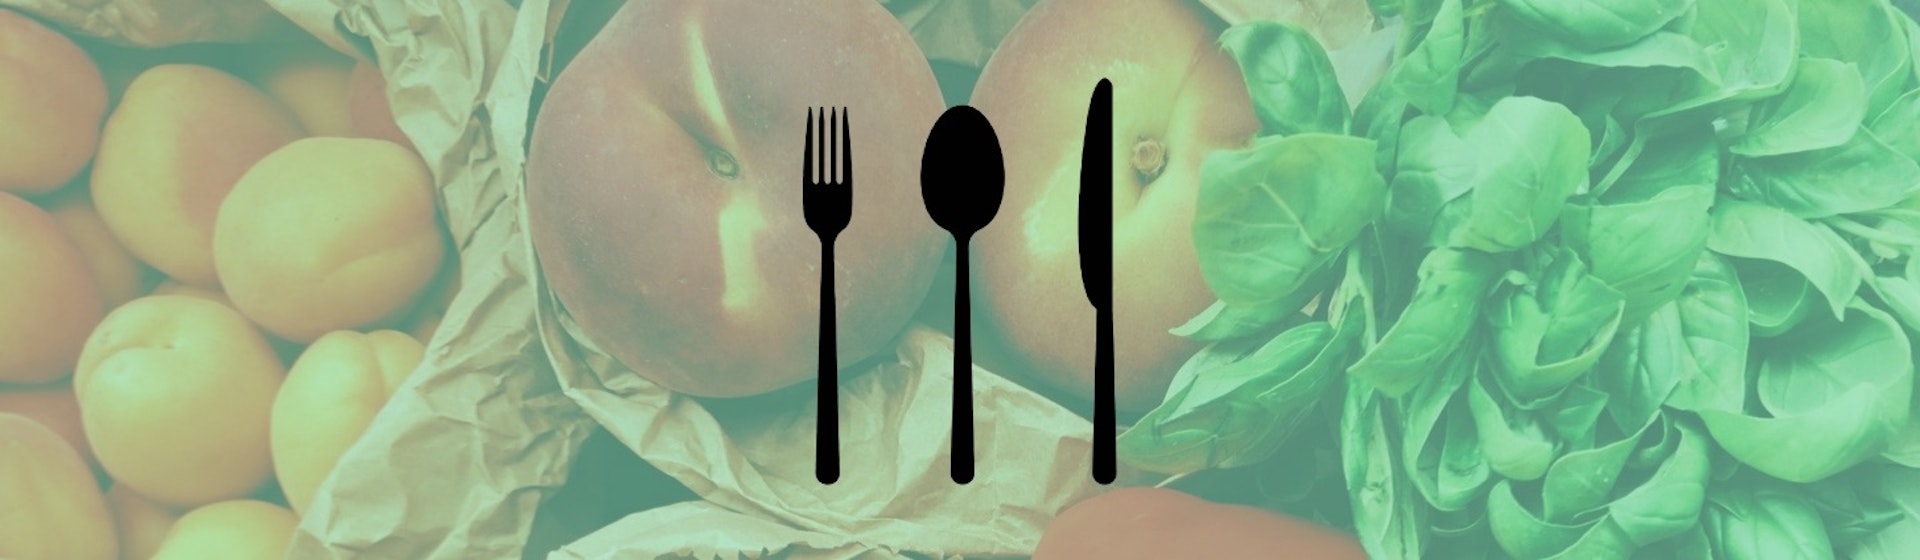 ¿Cómo incrementar el consumo de alimentos saludables? 8 ‘health hacks’ para empezar a comer sano